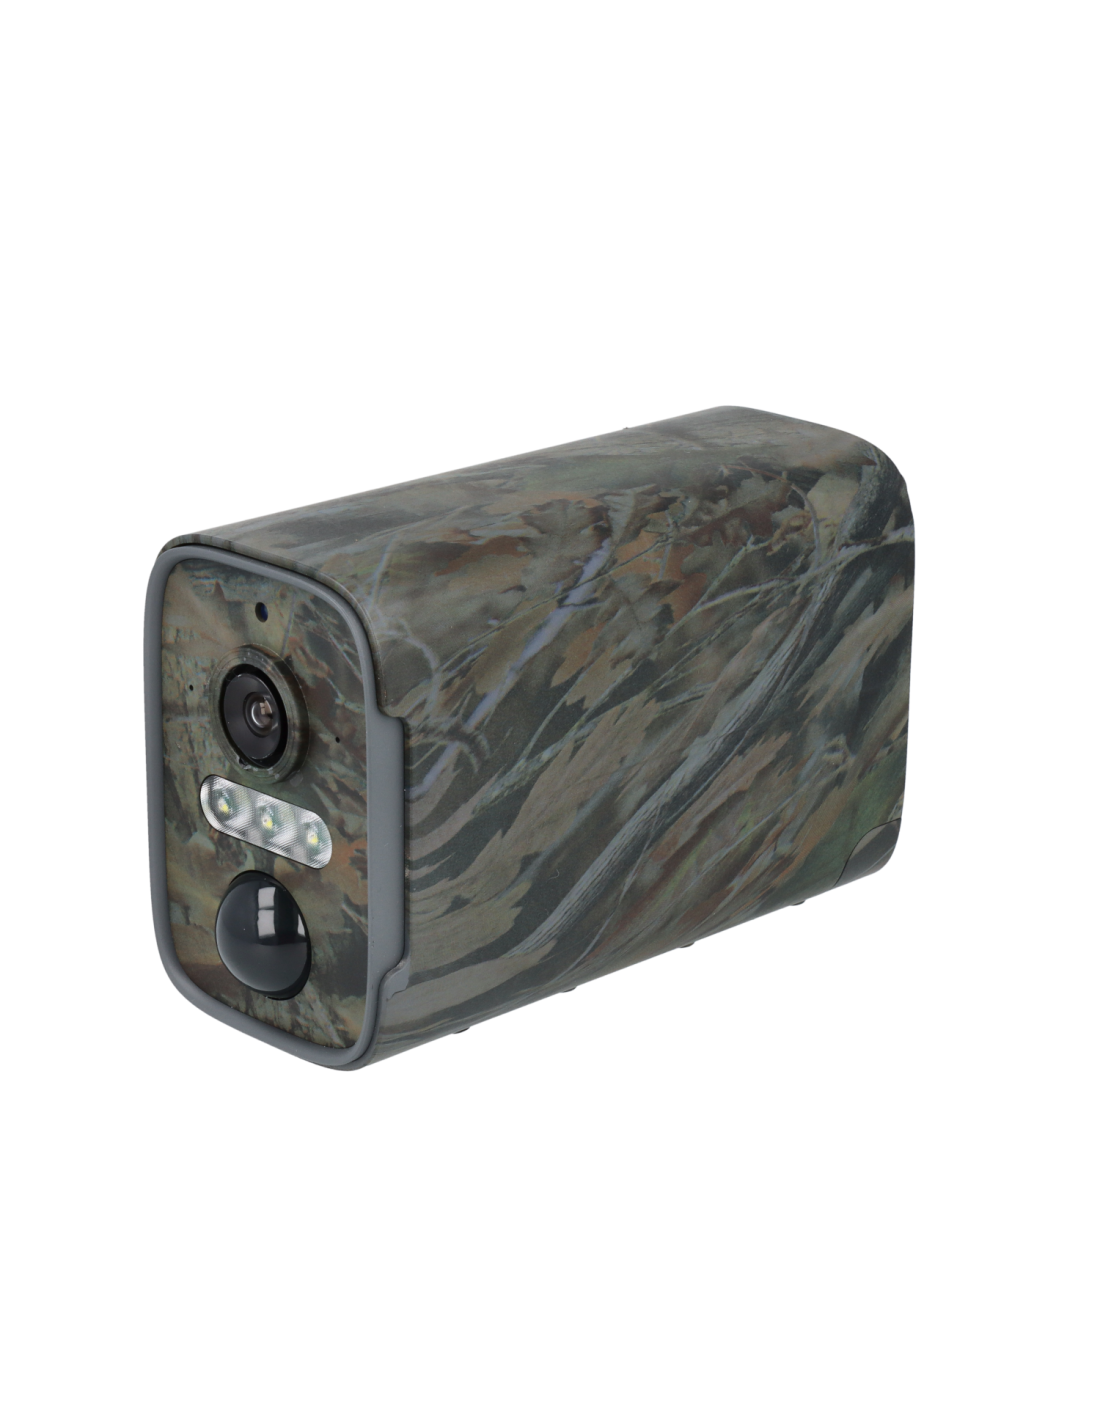 Smart Caméra 4G camouflage 4MP 2K 128Go vision nocturne invisible très  longue autonomie detection humaine et de mouvement